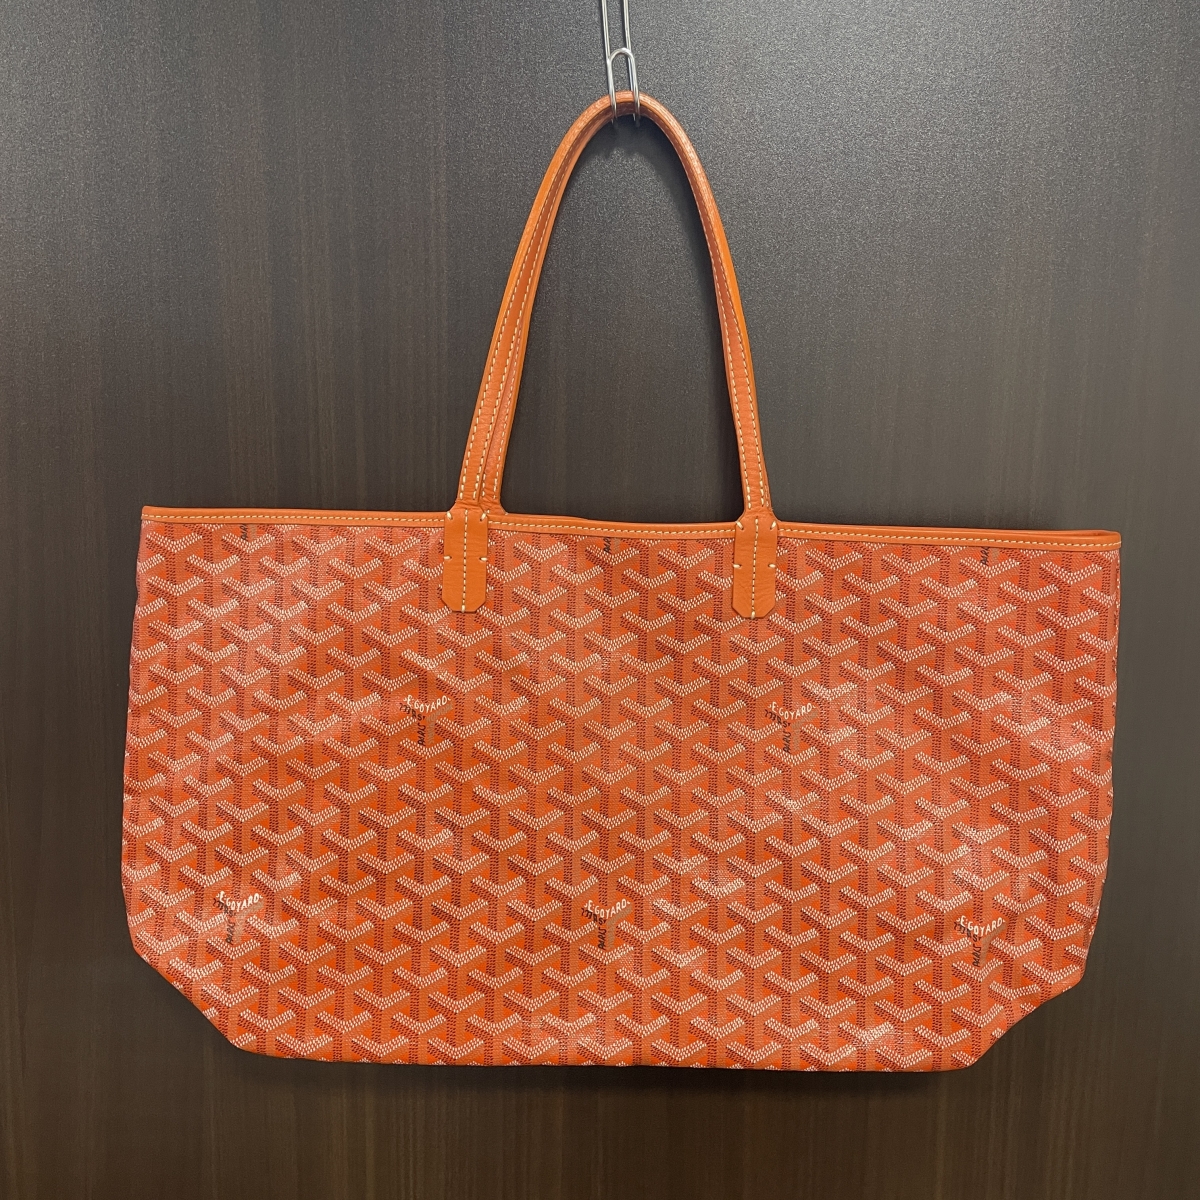 ゴヤールのオレンジ PVC素材 トートバッグ サンルイPMの買取実績です。